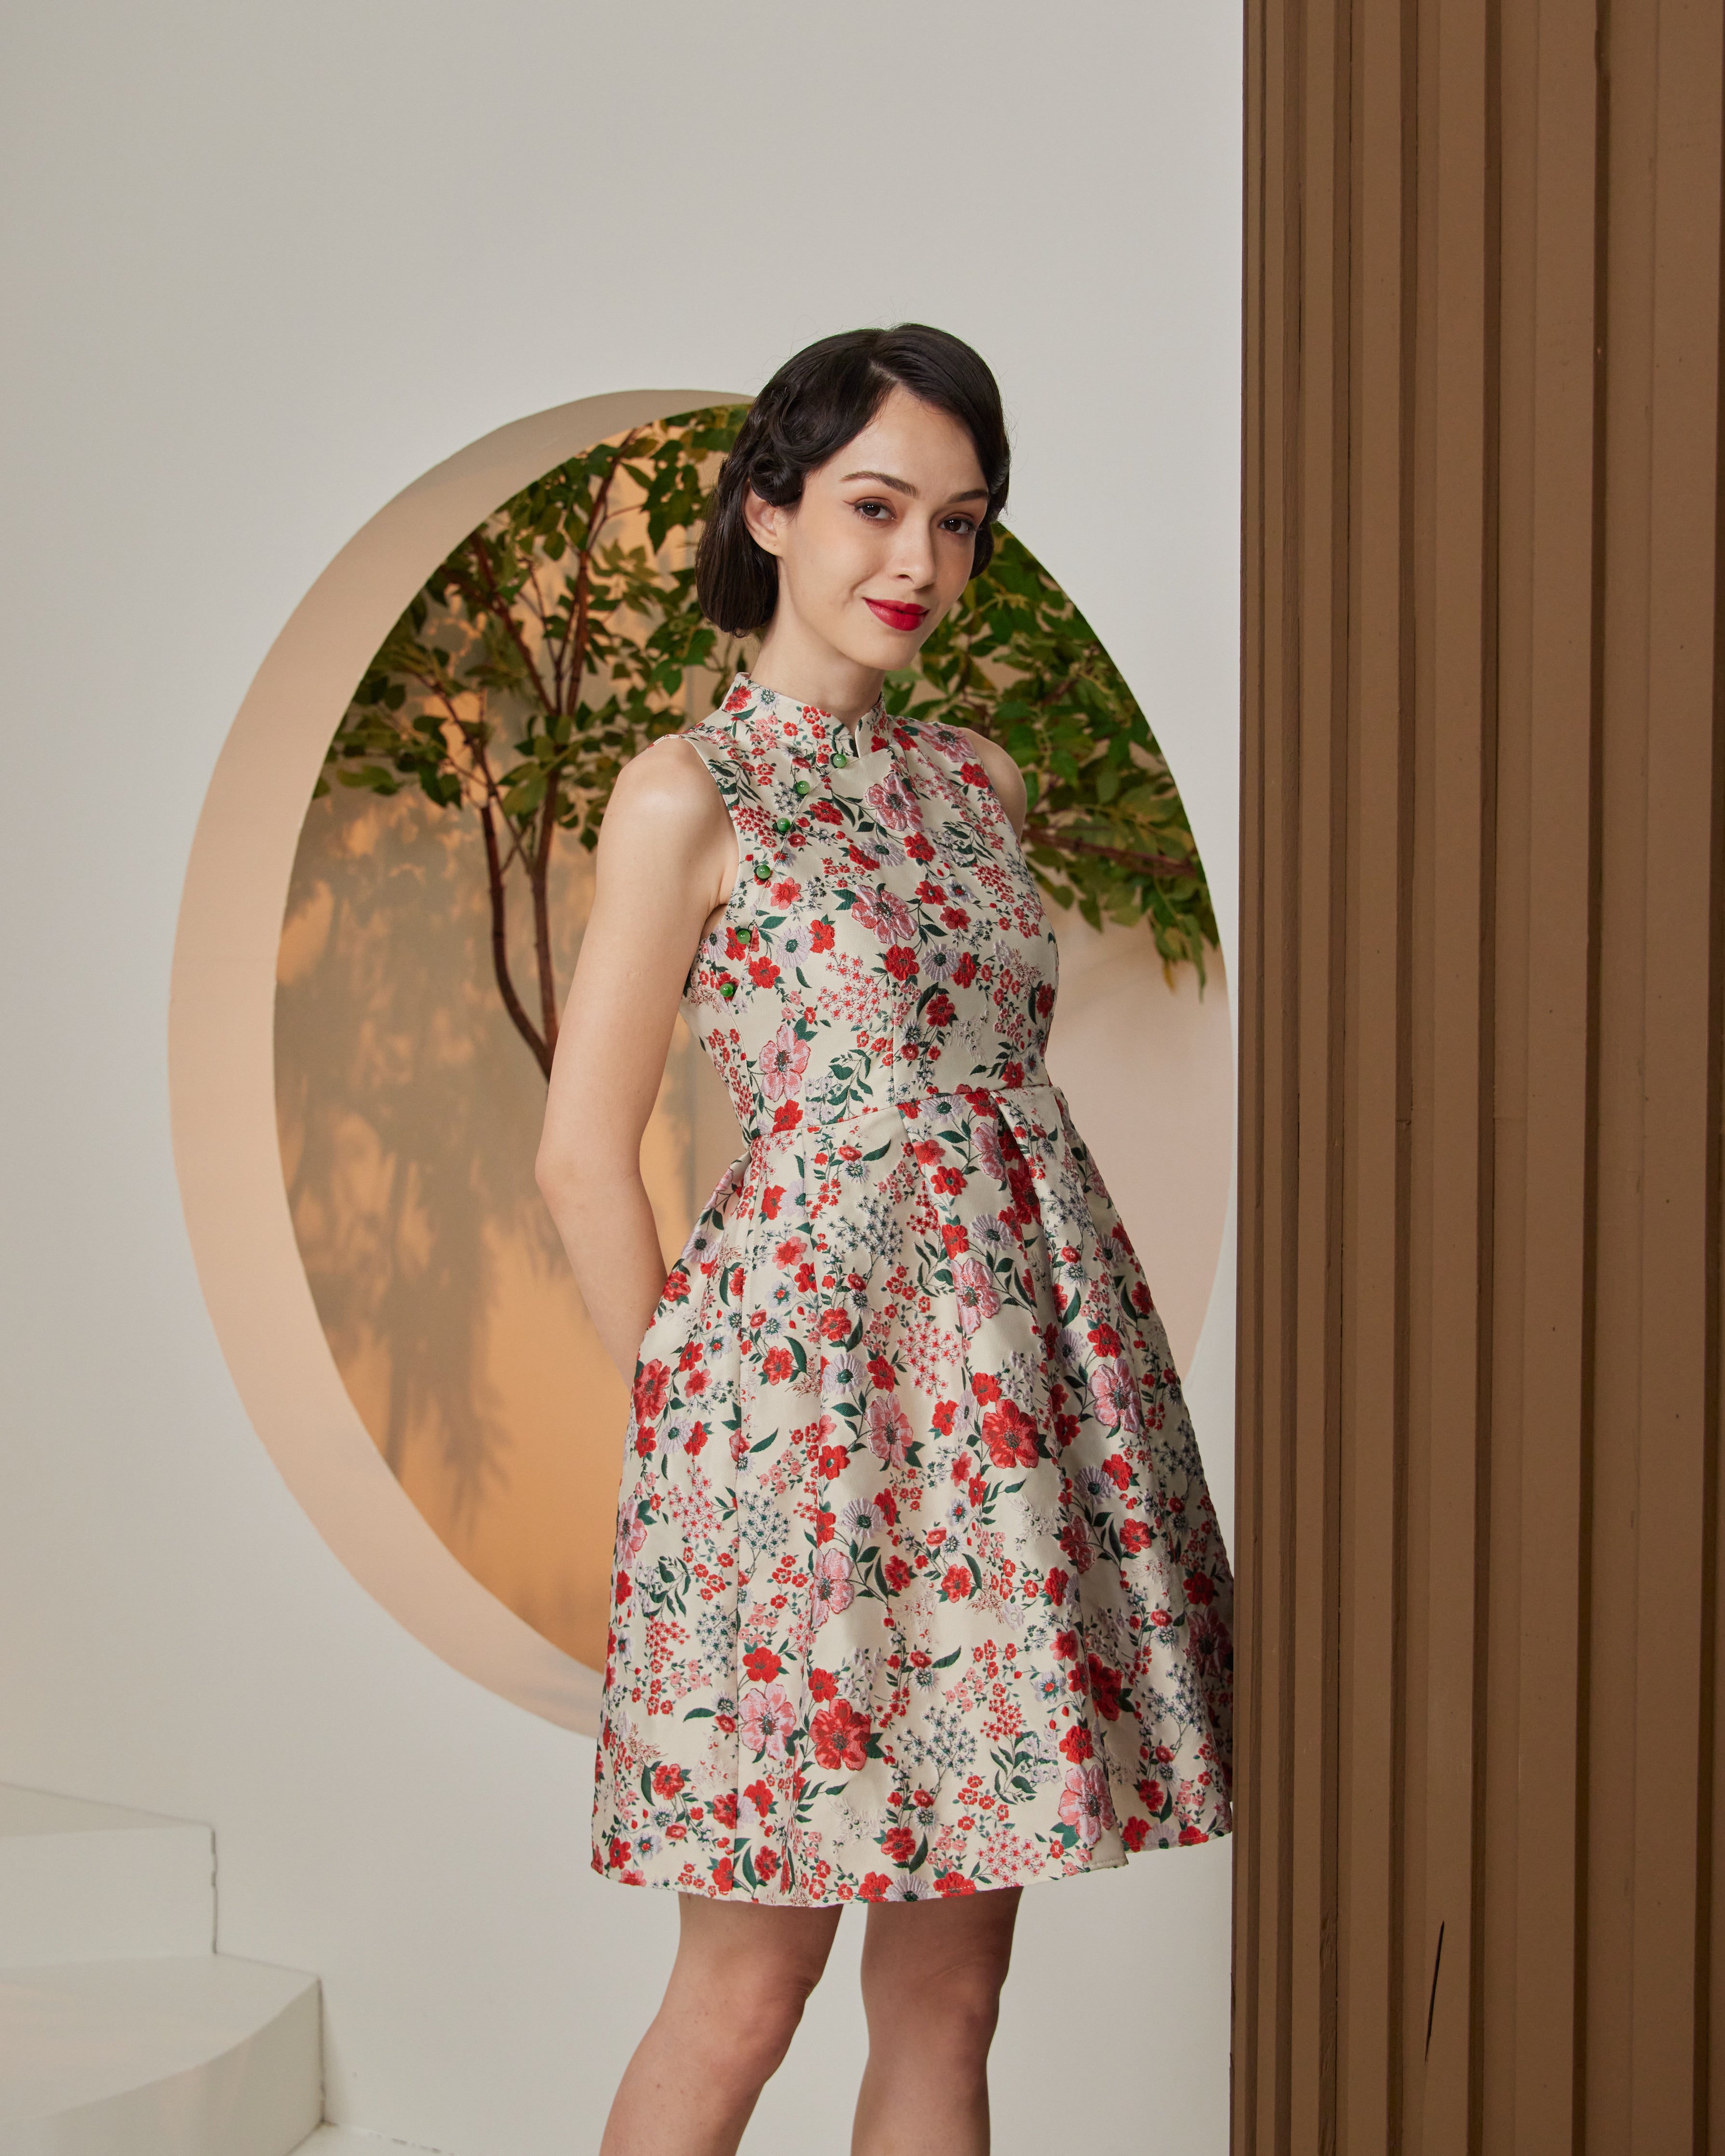 PREMIUM: Xi Pleated Cheongsam Dress